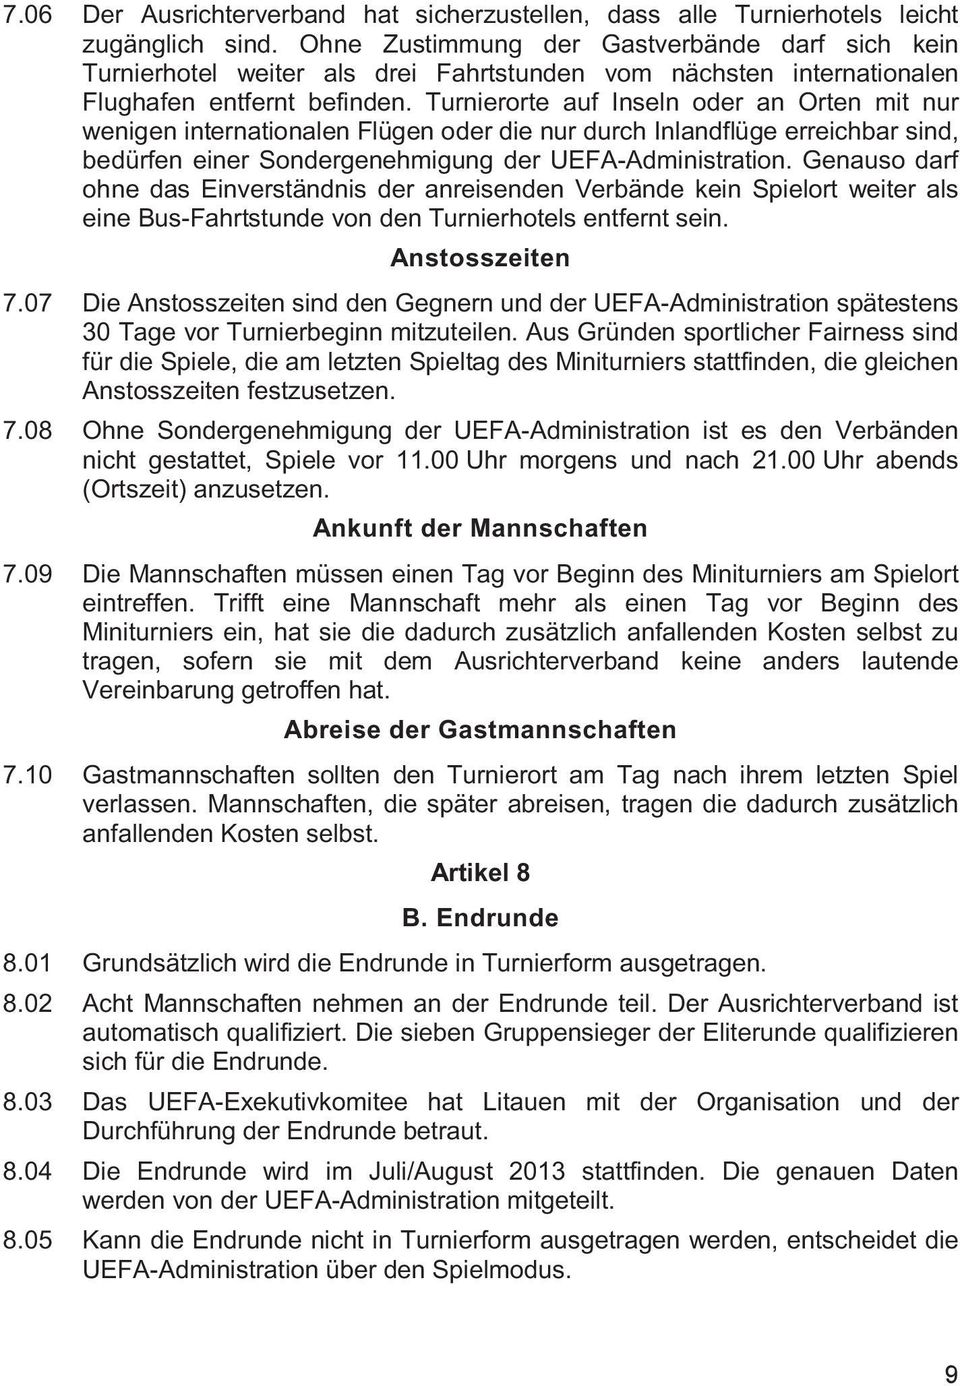 Turnierorte auf Inseln oder an Orten mit nur wenigen internationalen Flügen oder die nur durch Inlandflüge erreichbar sind, bedürfen einer Sondergenehmigung der UEFA-Administration.